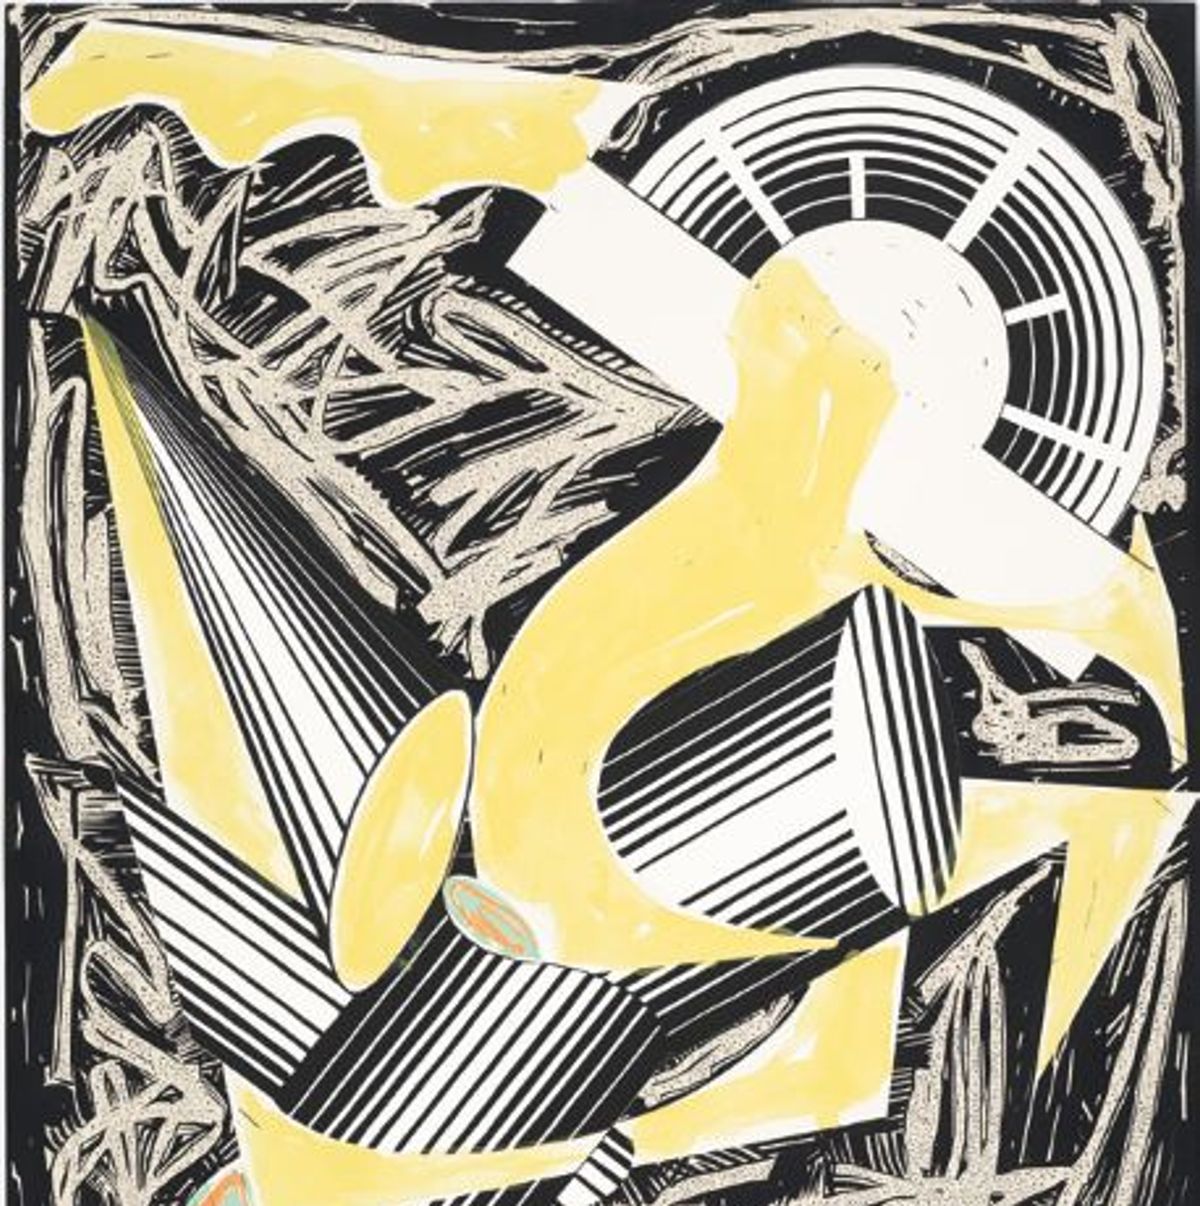 Frank Stella, Illustration d’après Had Gadya d’El Lissitzky, première de couverture, CTP VI, 1985, peinture acrylique et supports divers d’impression sur papier collé. 

© Baronian